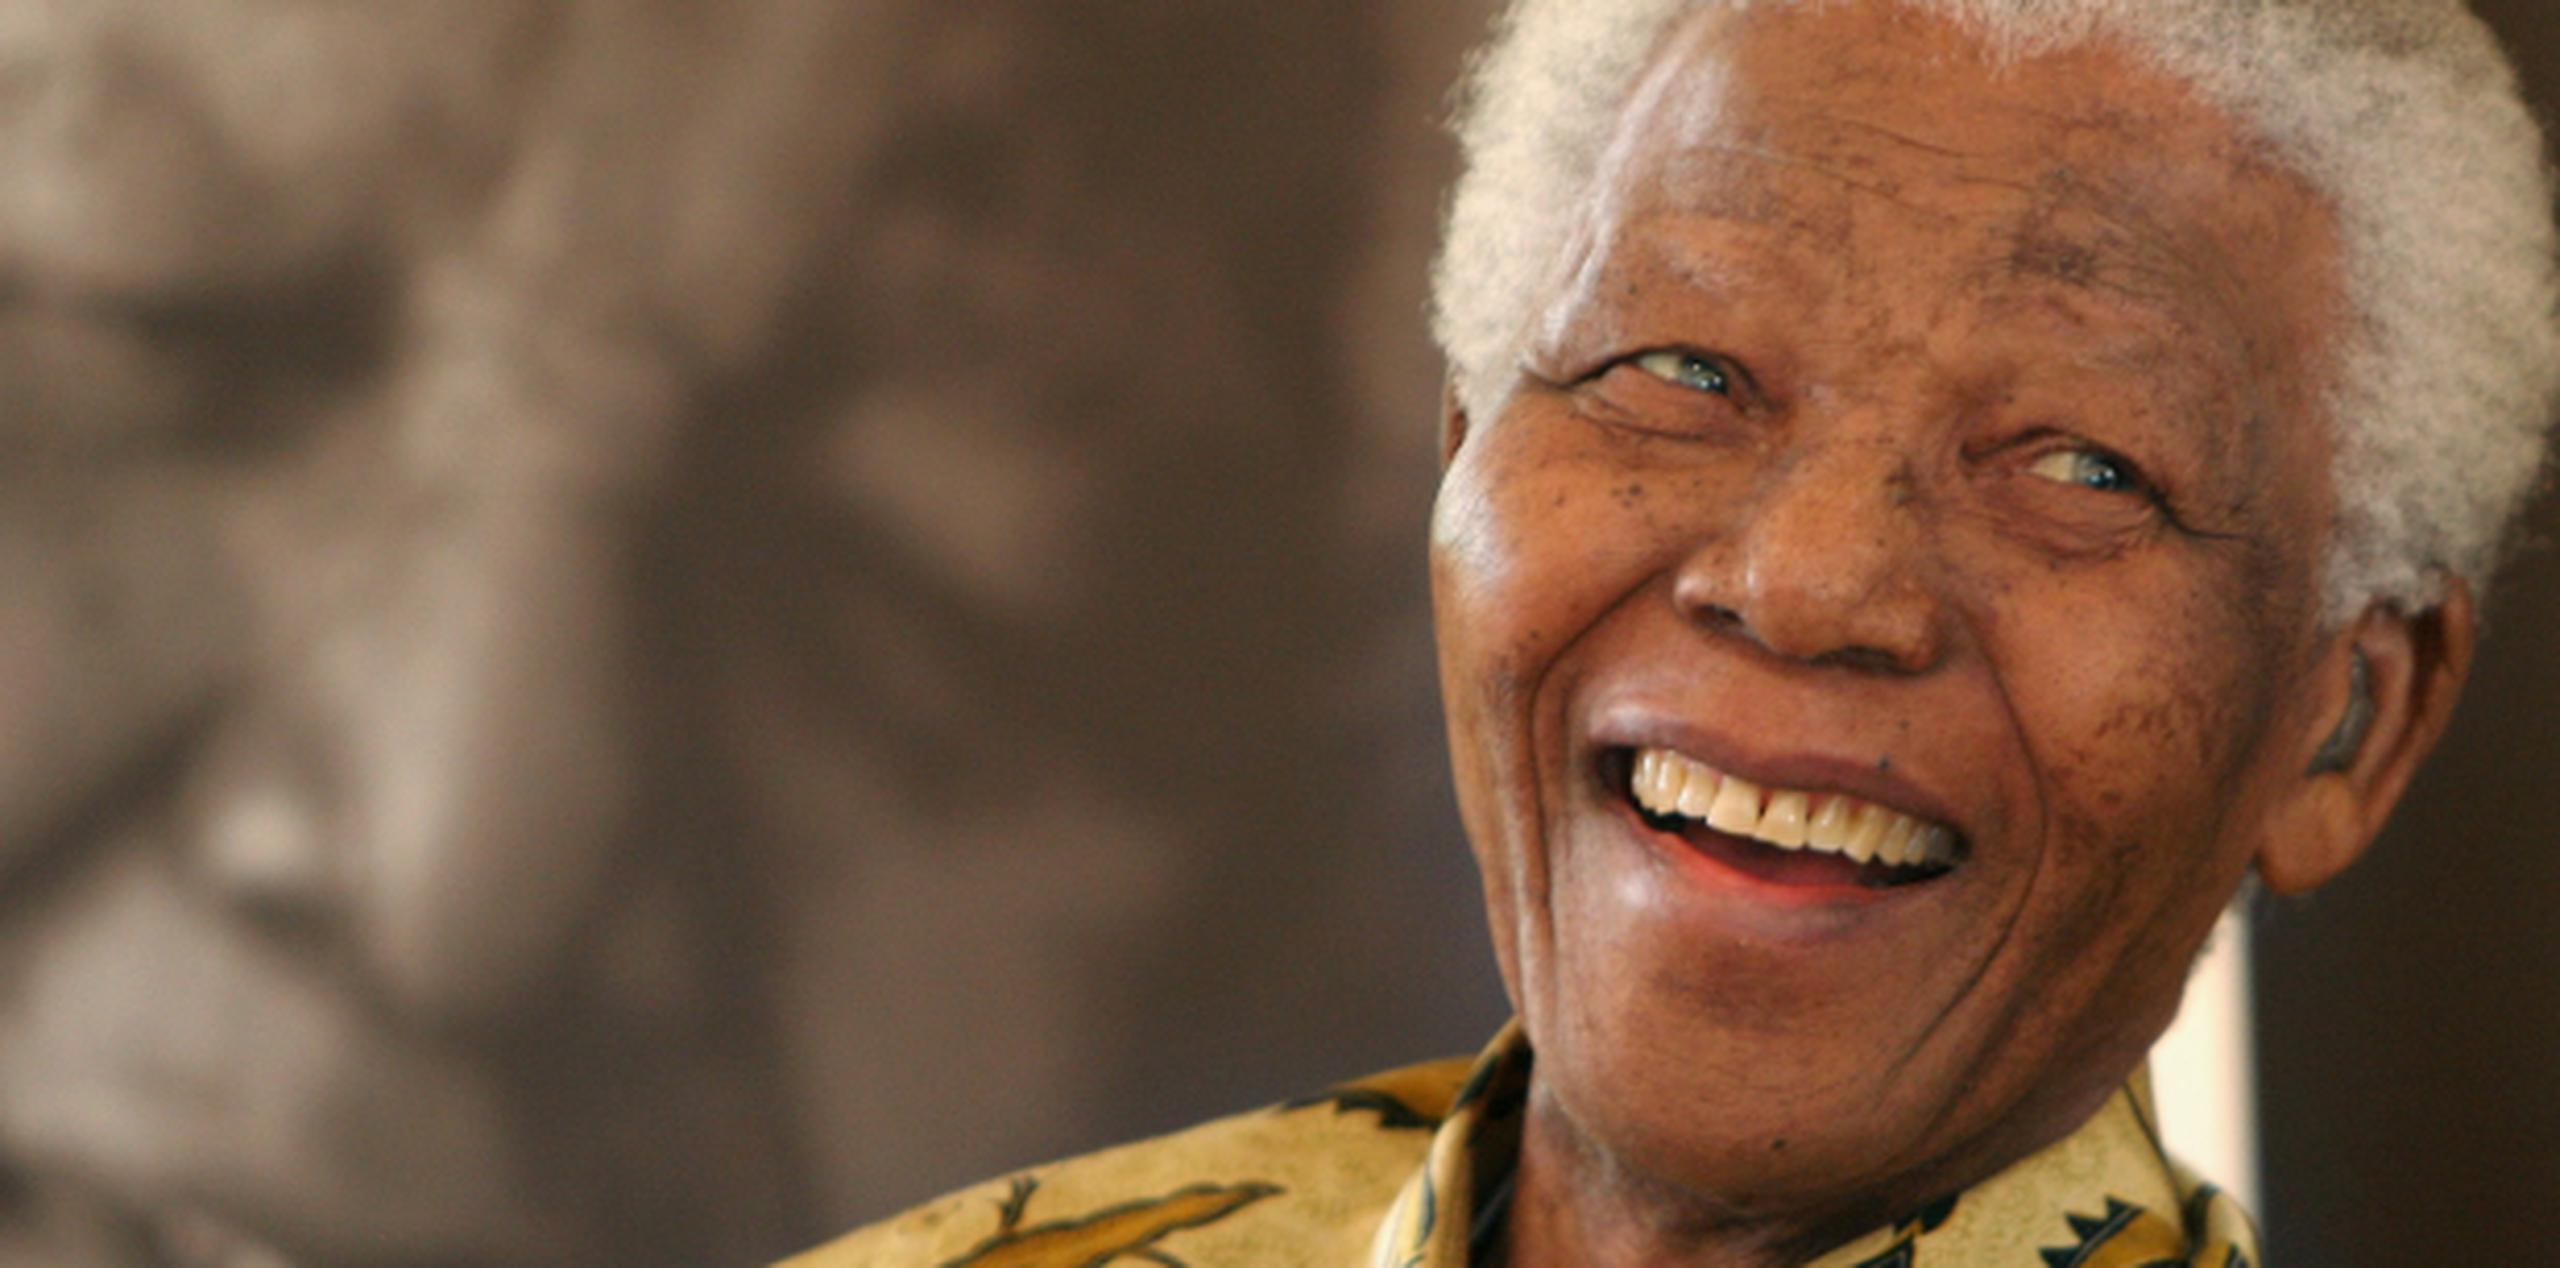 La cifra sobre la herencia de Mandela es estimada, ya que excluye los beneficios que derivados de los derechos de imagen. (Archivo)